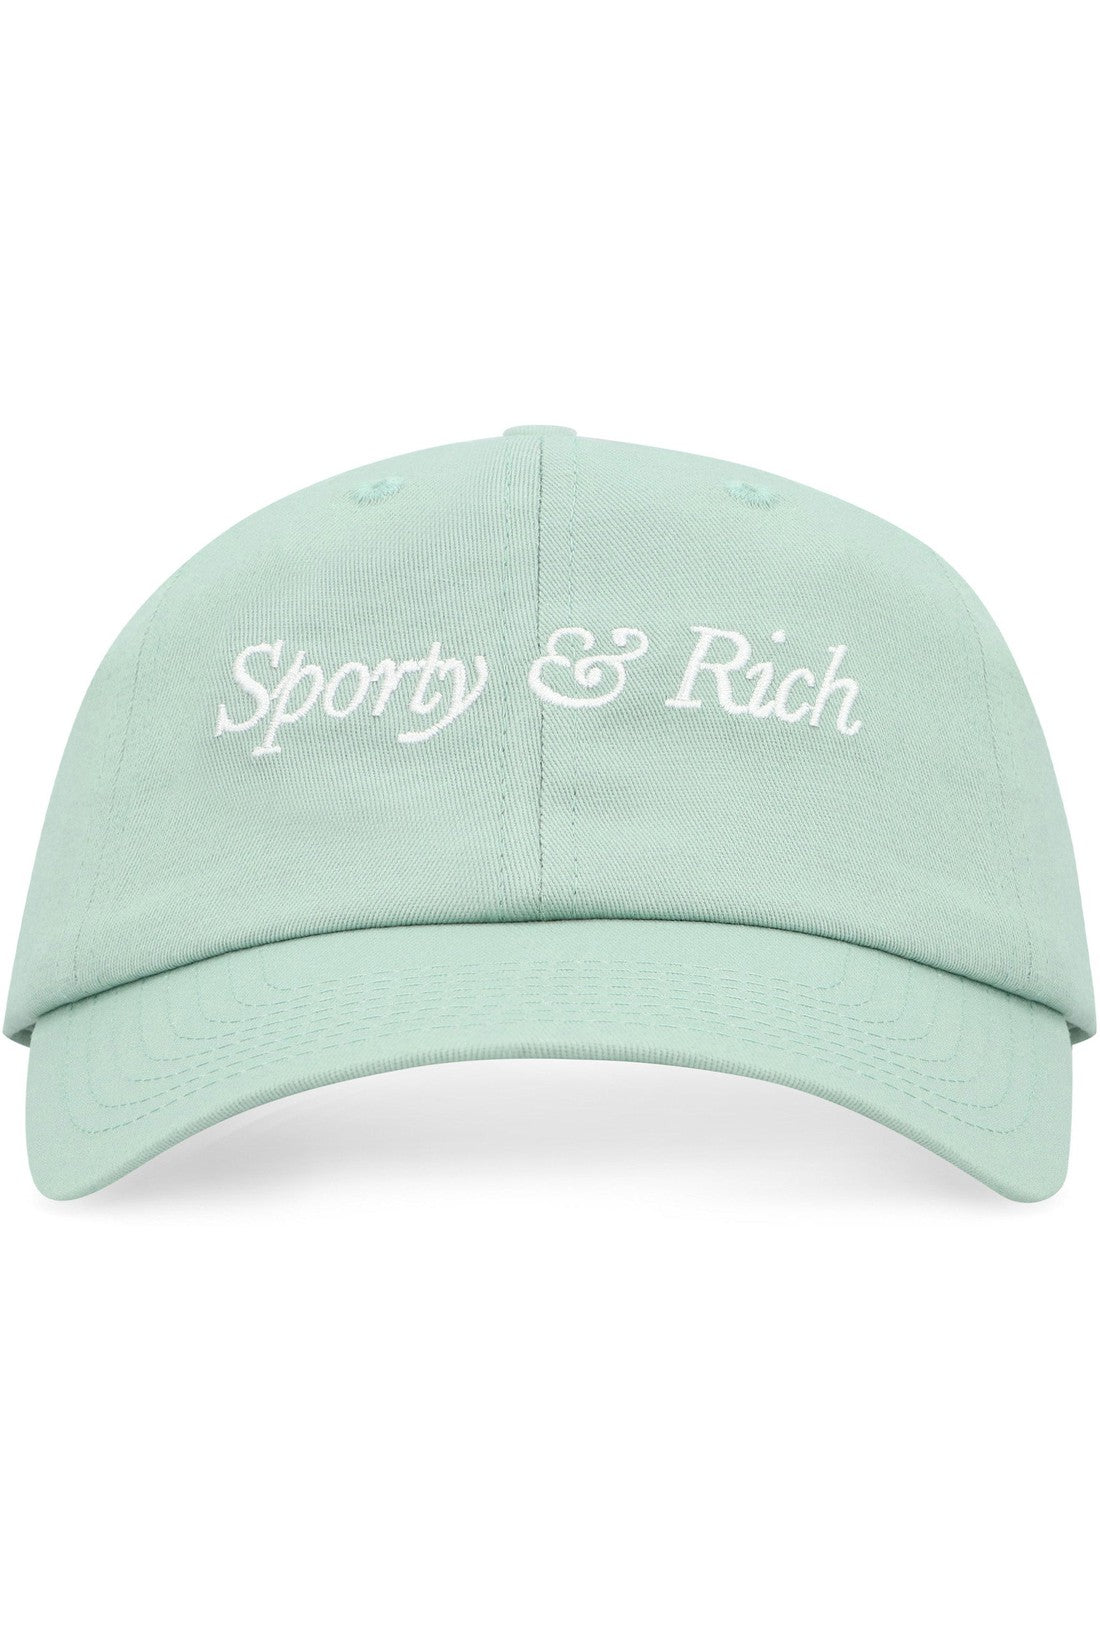 Sporty & Rich-OUTLET-SALE-Logo baseball cap-ARCHIVIST